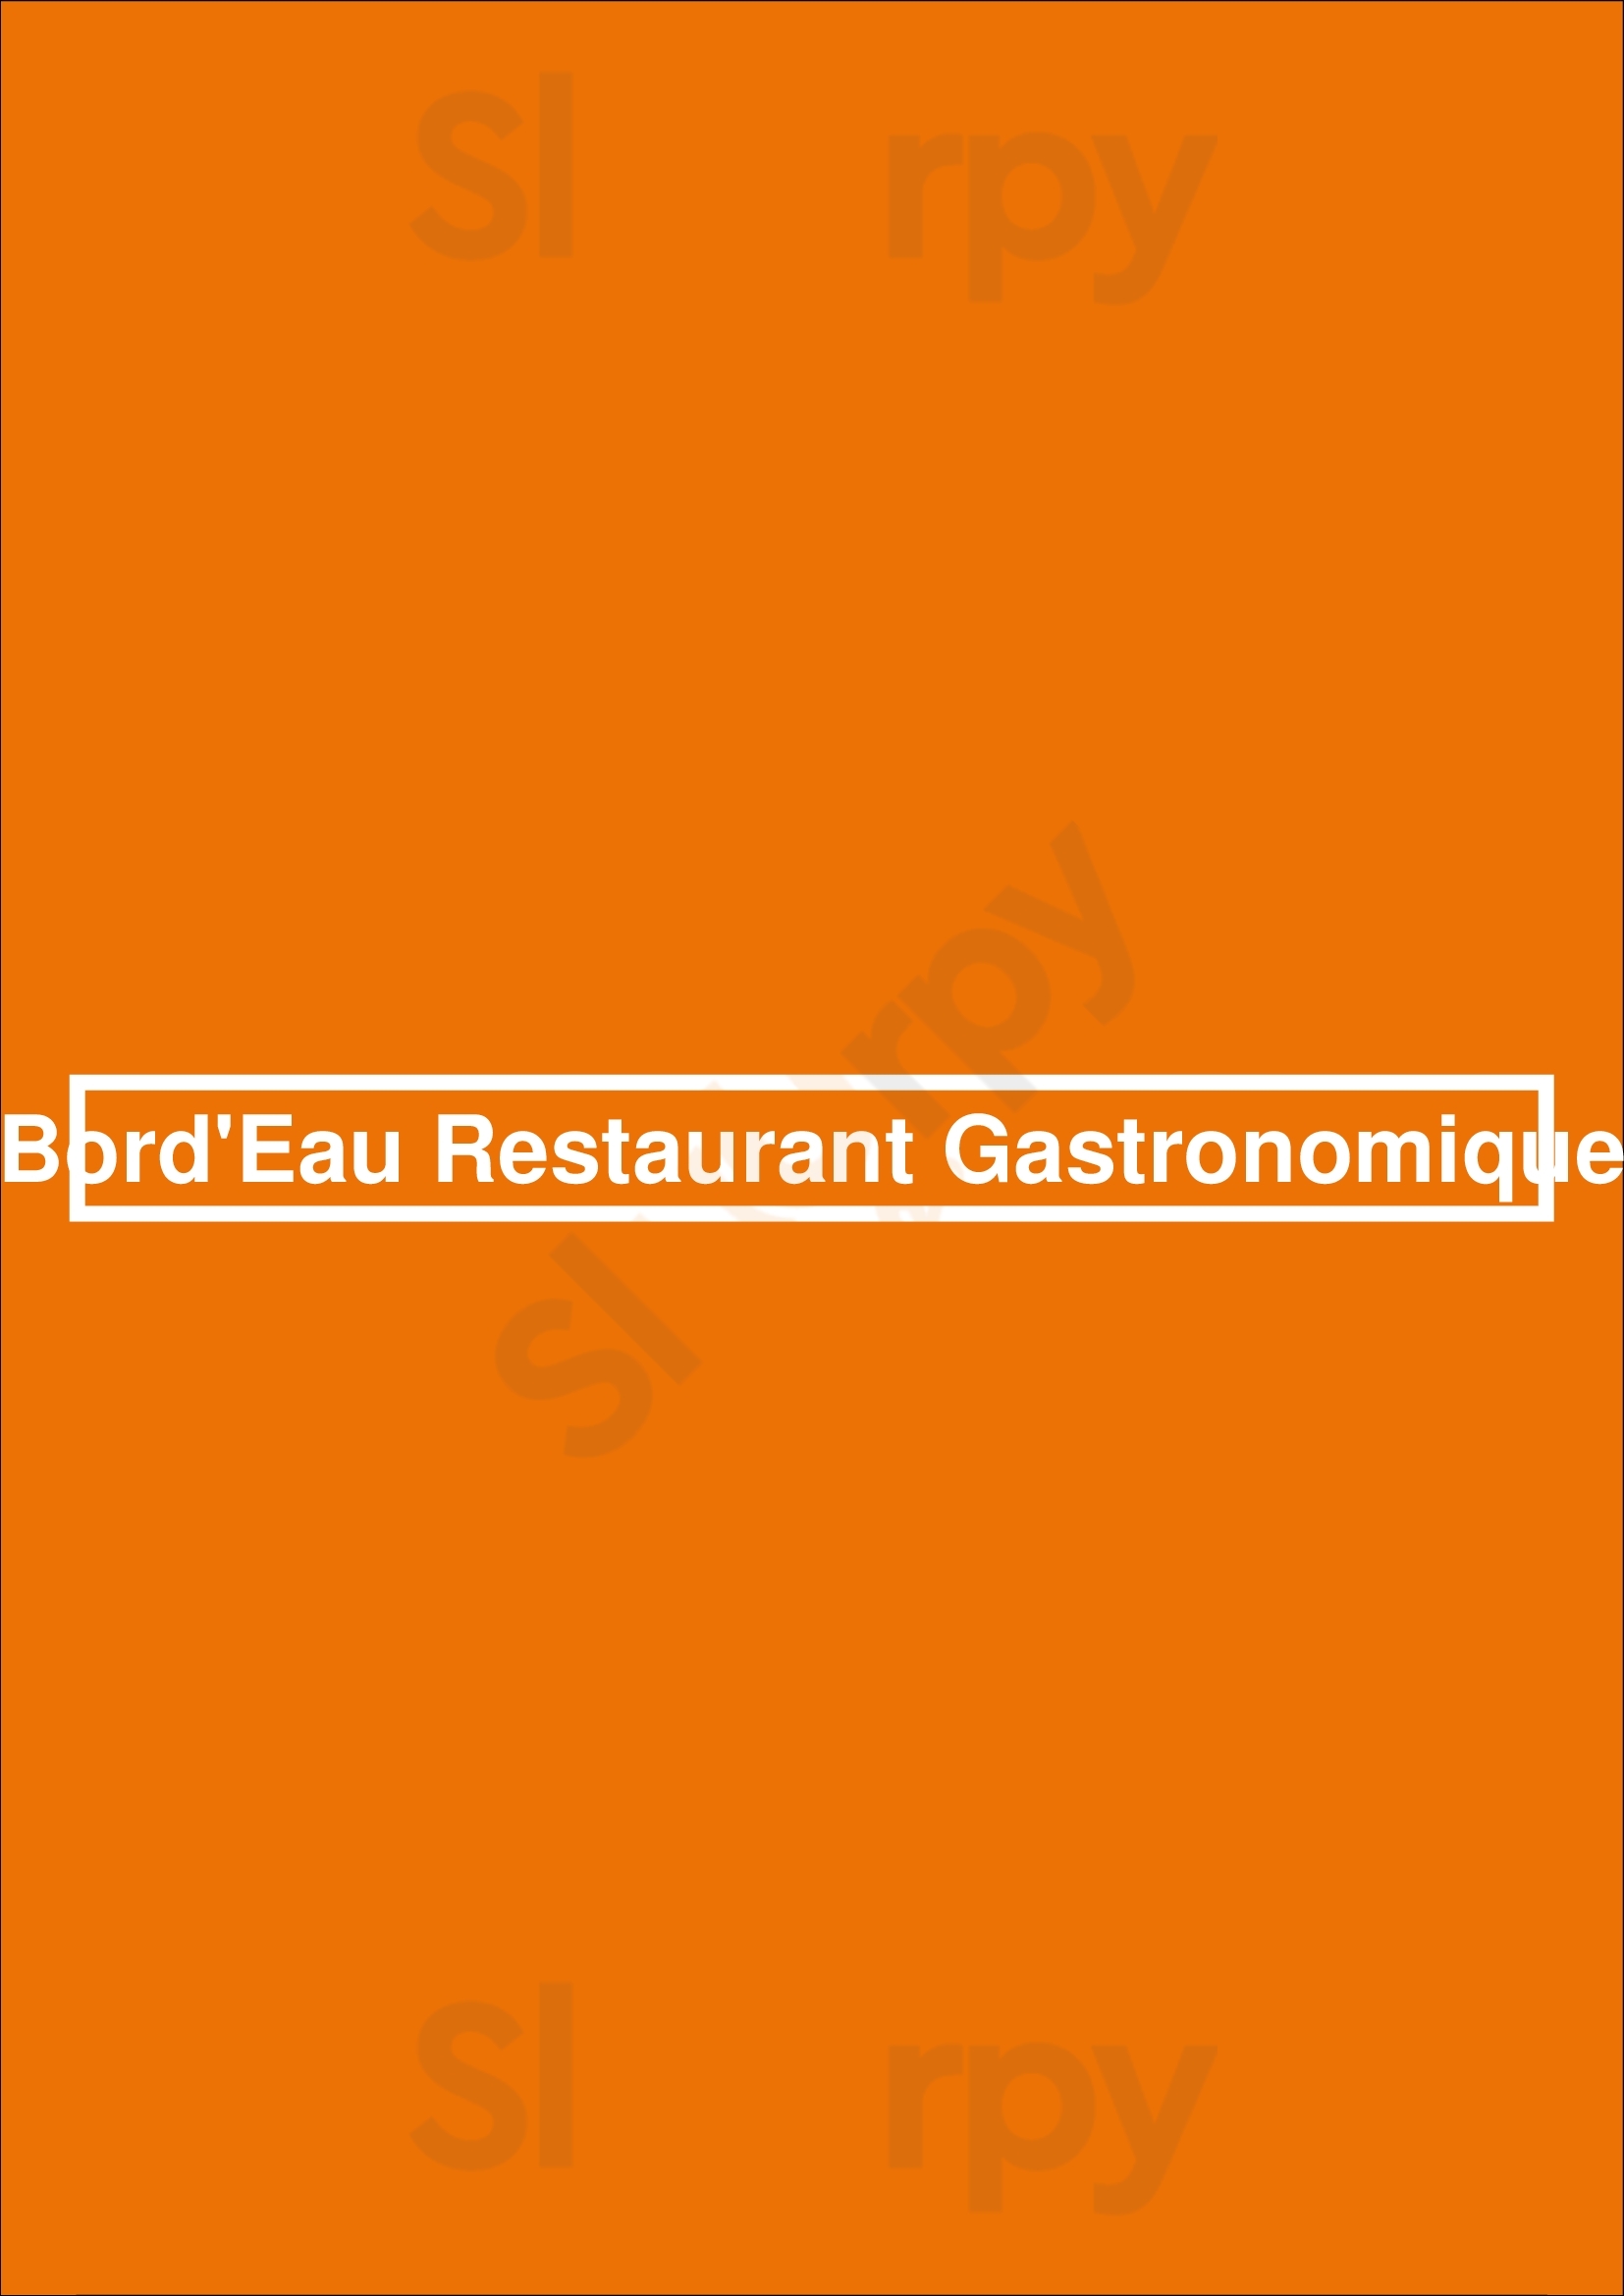 Bord'eau Restaurant Gastronomique Amsterdam Menu - 1